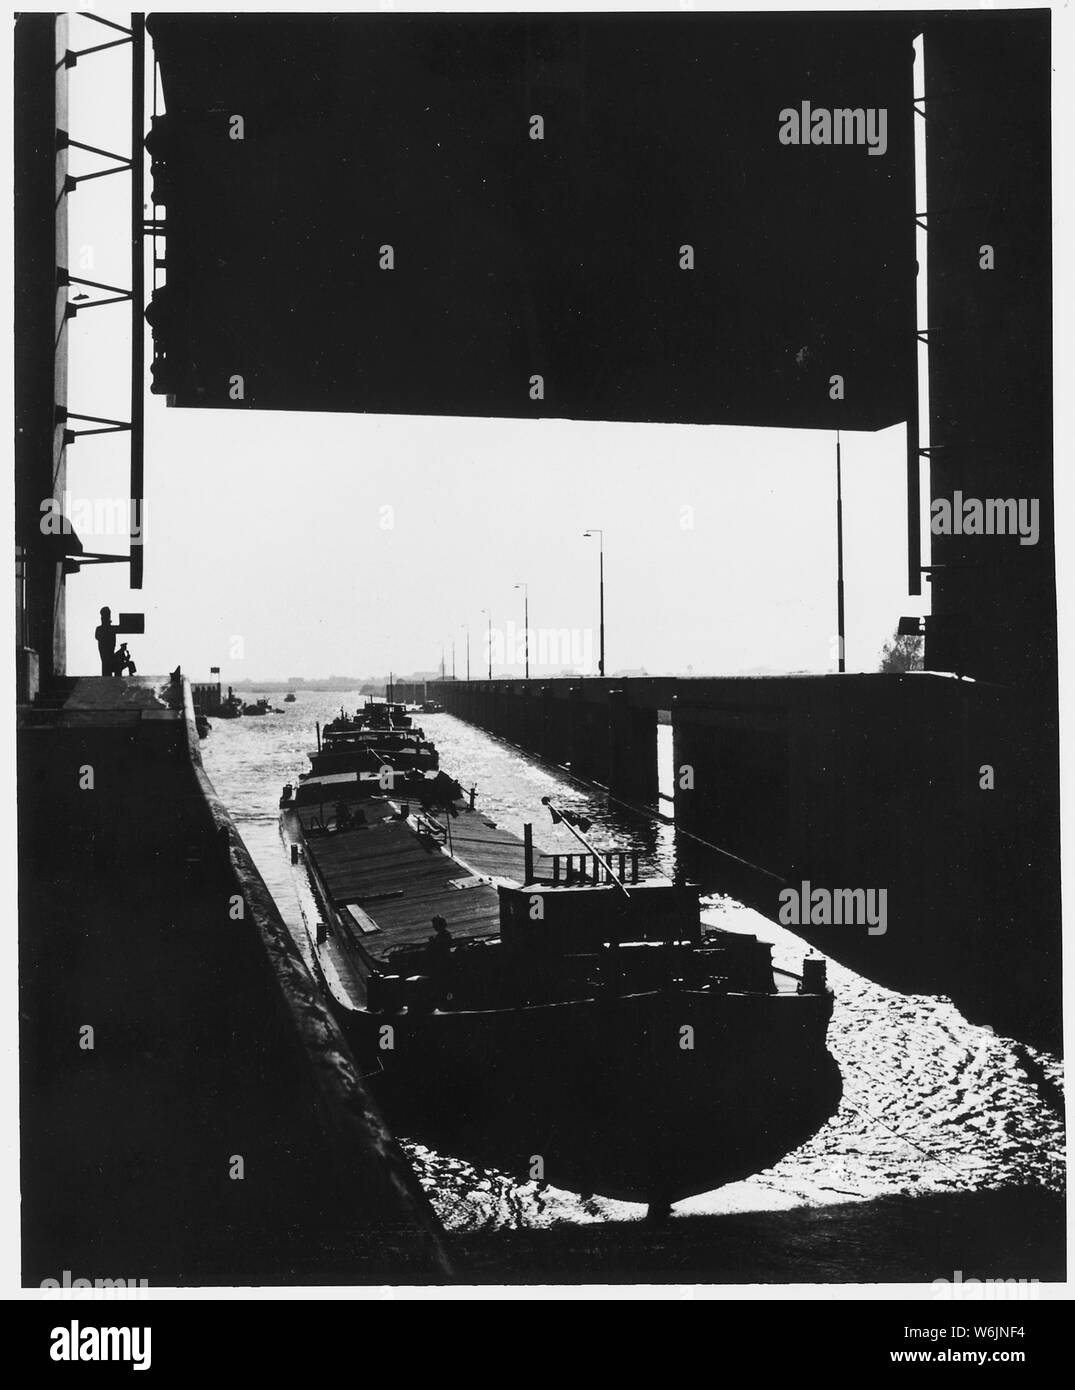 Aux Pays-Bas. Après la Seconde Guerre mondiale, une chaîne de péniches passe par le lockgates de la princesse Beatrix sluice à Vreeswijk, l'un des principaux canaux de Hollande. Écluses a dû être reconstruit pour empêcher l'empiétement de l'eau salée de la mer Banque D'Images